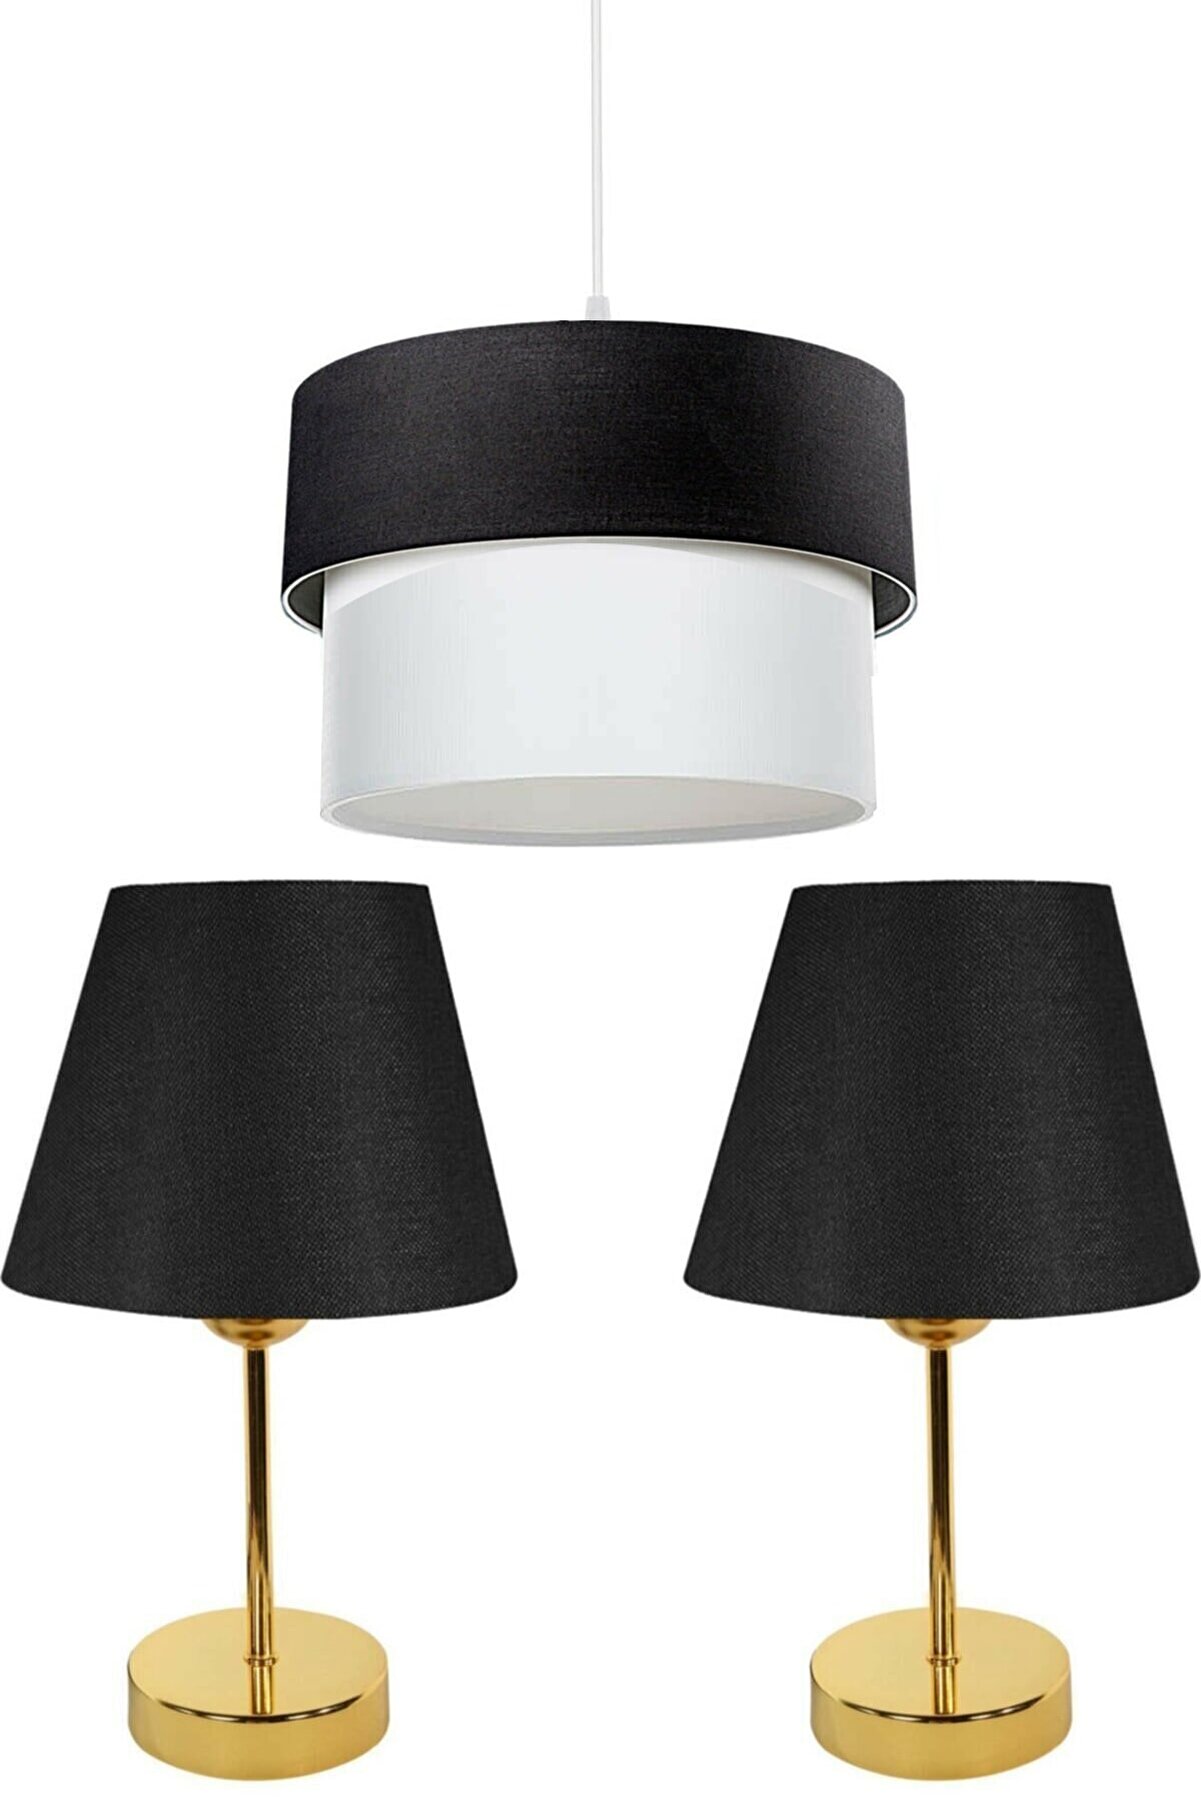 3'lu set 1 pcs Ceiling lighting/2 pcs Table Lamp